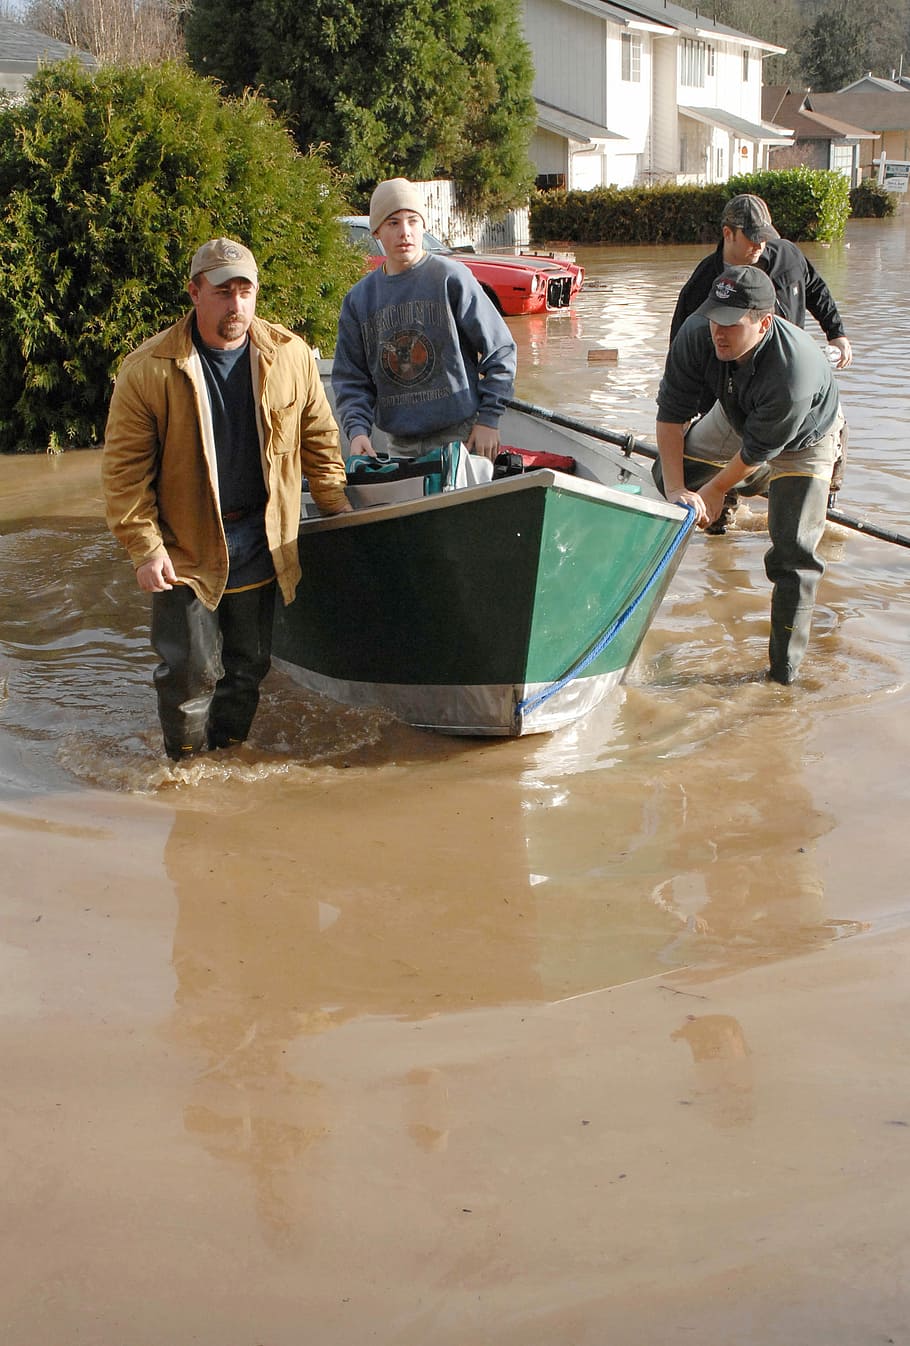 2007, inundações, Vernonia, Oregon, força aérea, canoa, fotos, Desastre natural, pessoas, domínio público